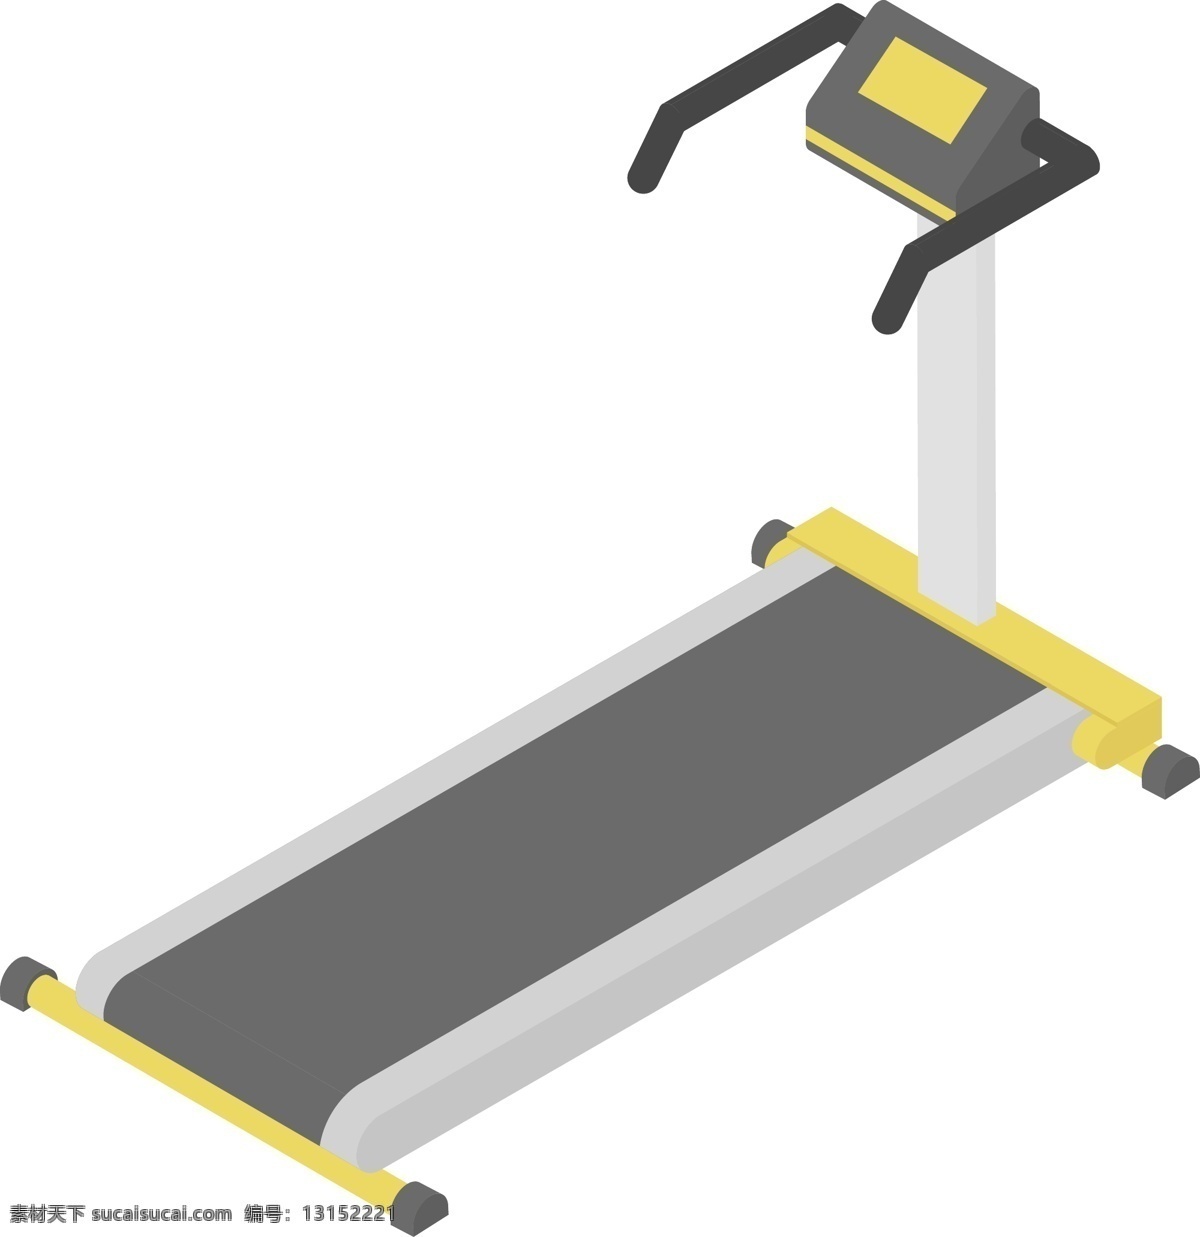 矢量 卡通 跑步机 免 扣 立体2.5d 运动器材 健身器材 运动健身 简约 图标 插画 卡通矢量图